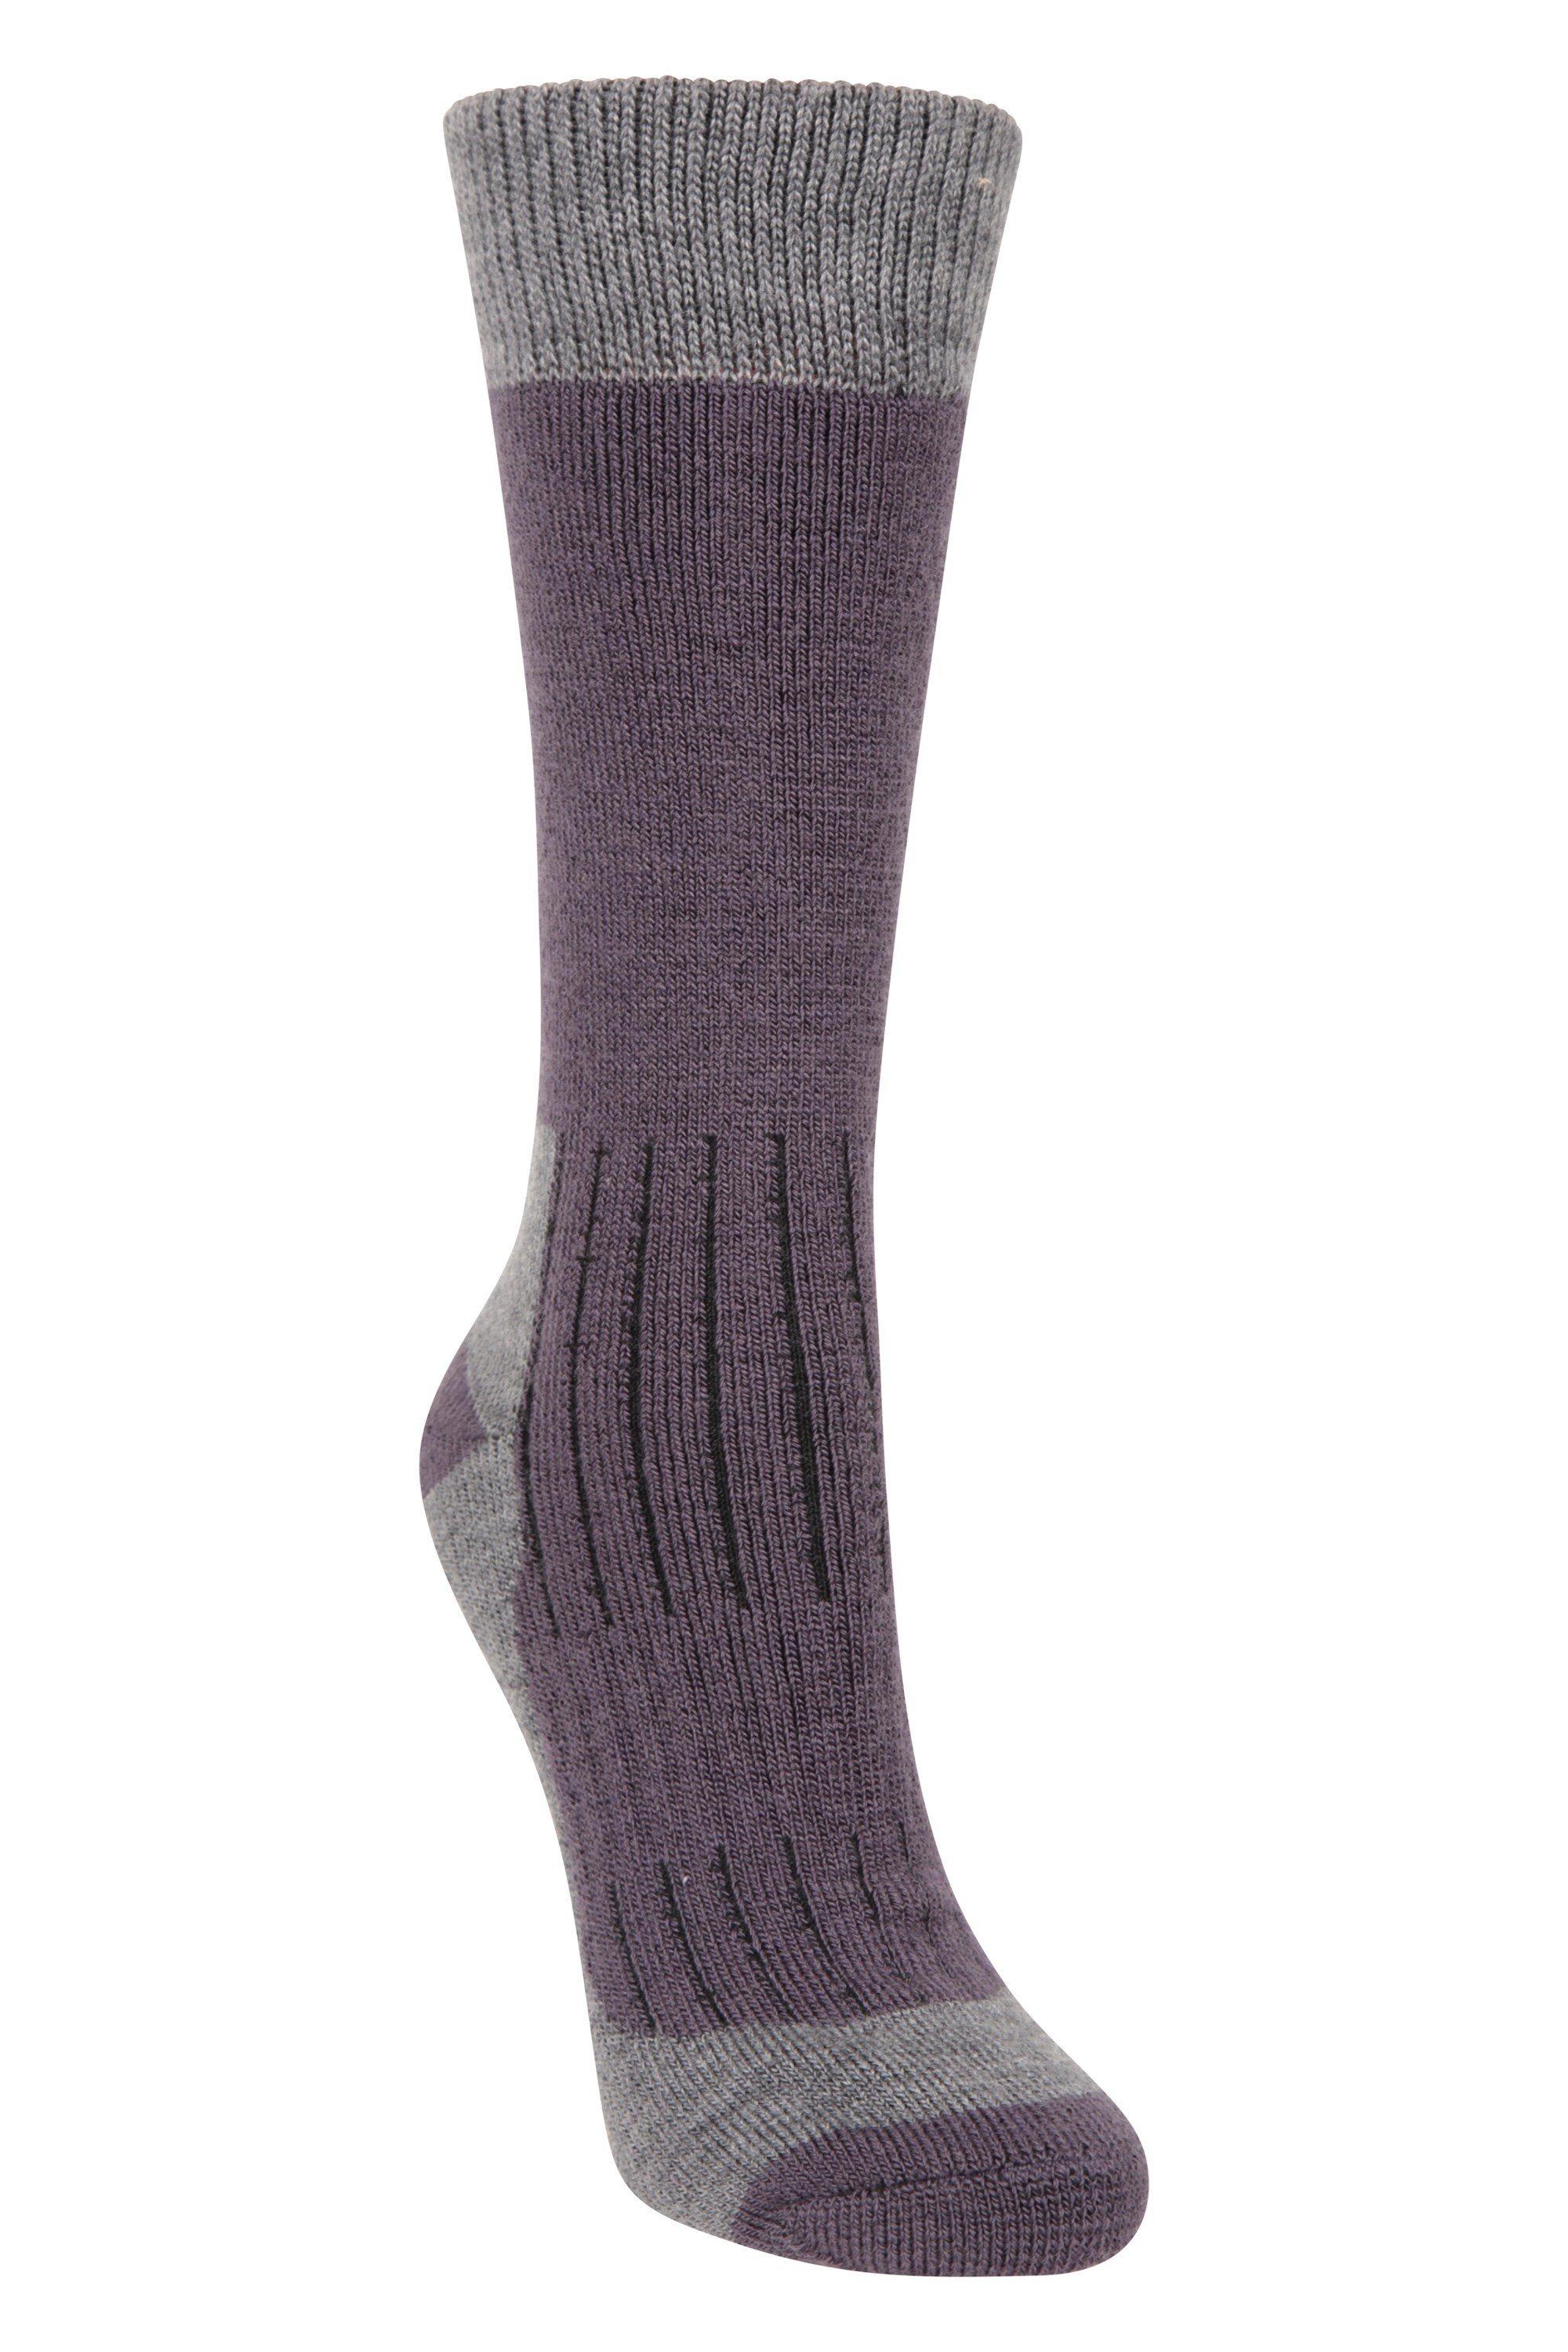 Merino Socks Smooth Toe  Thermal Explorer Sock